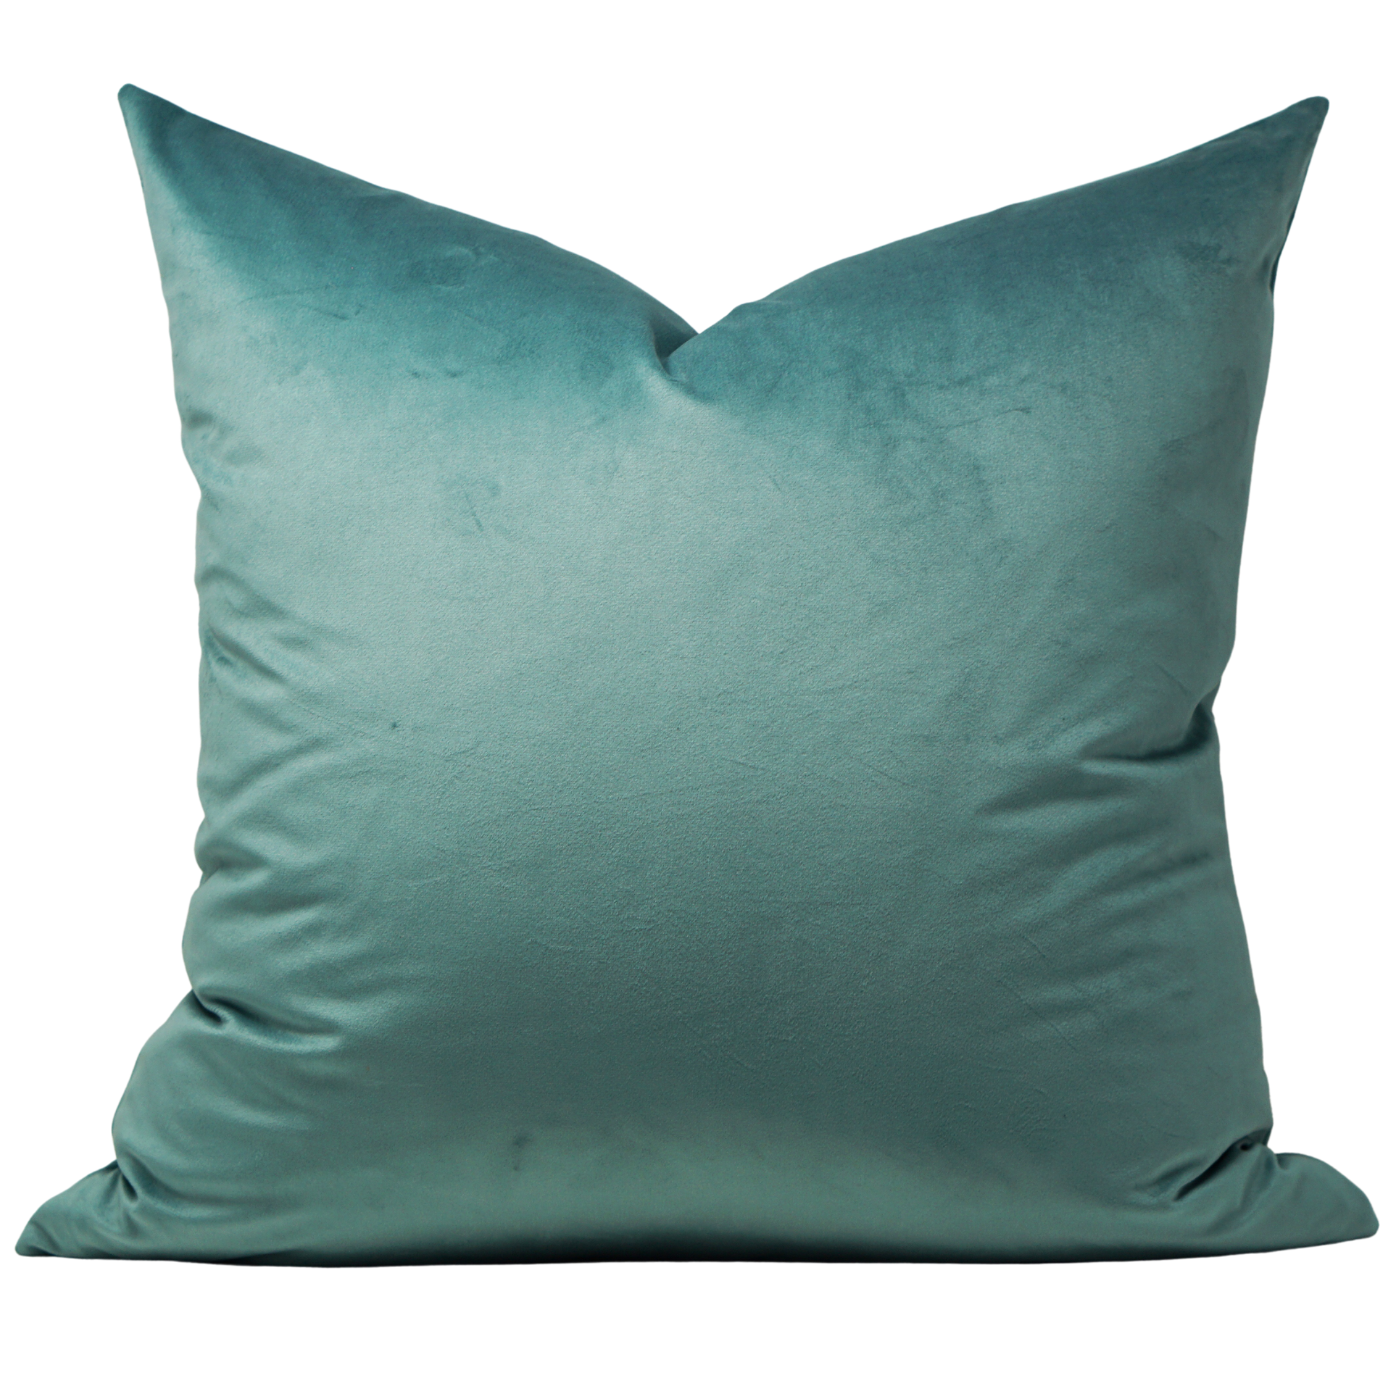 Lush Velvet Pillow: Tranquil Blue